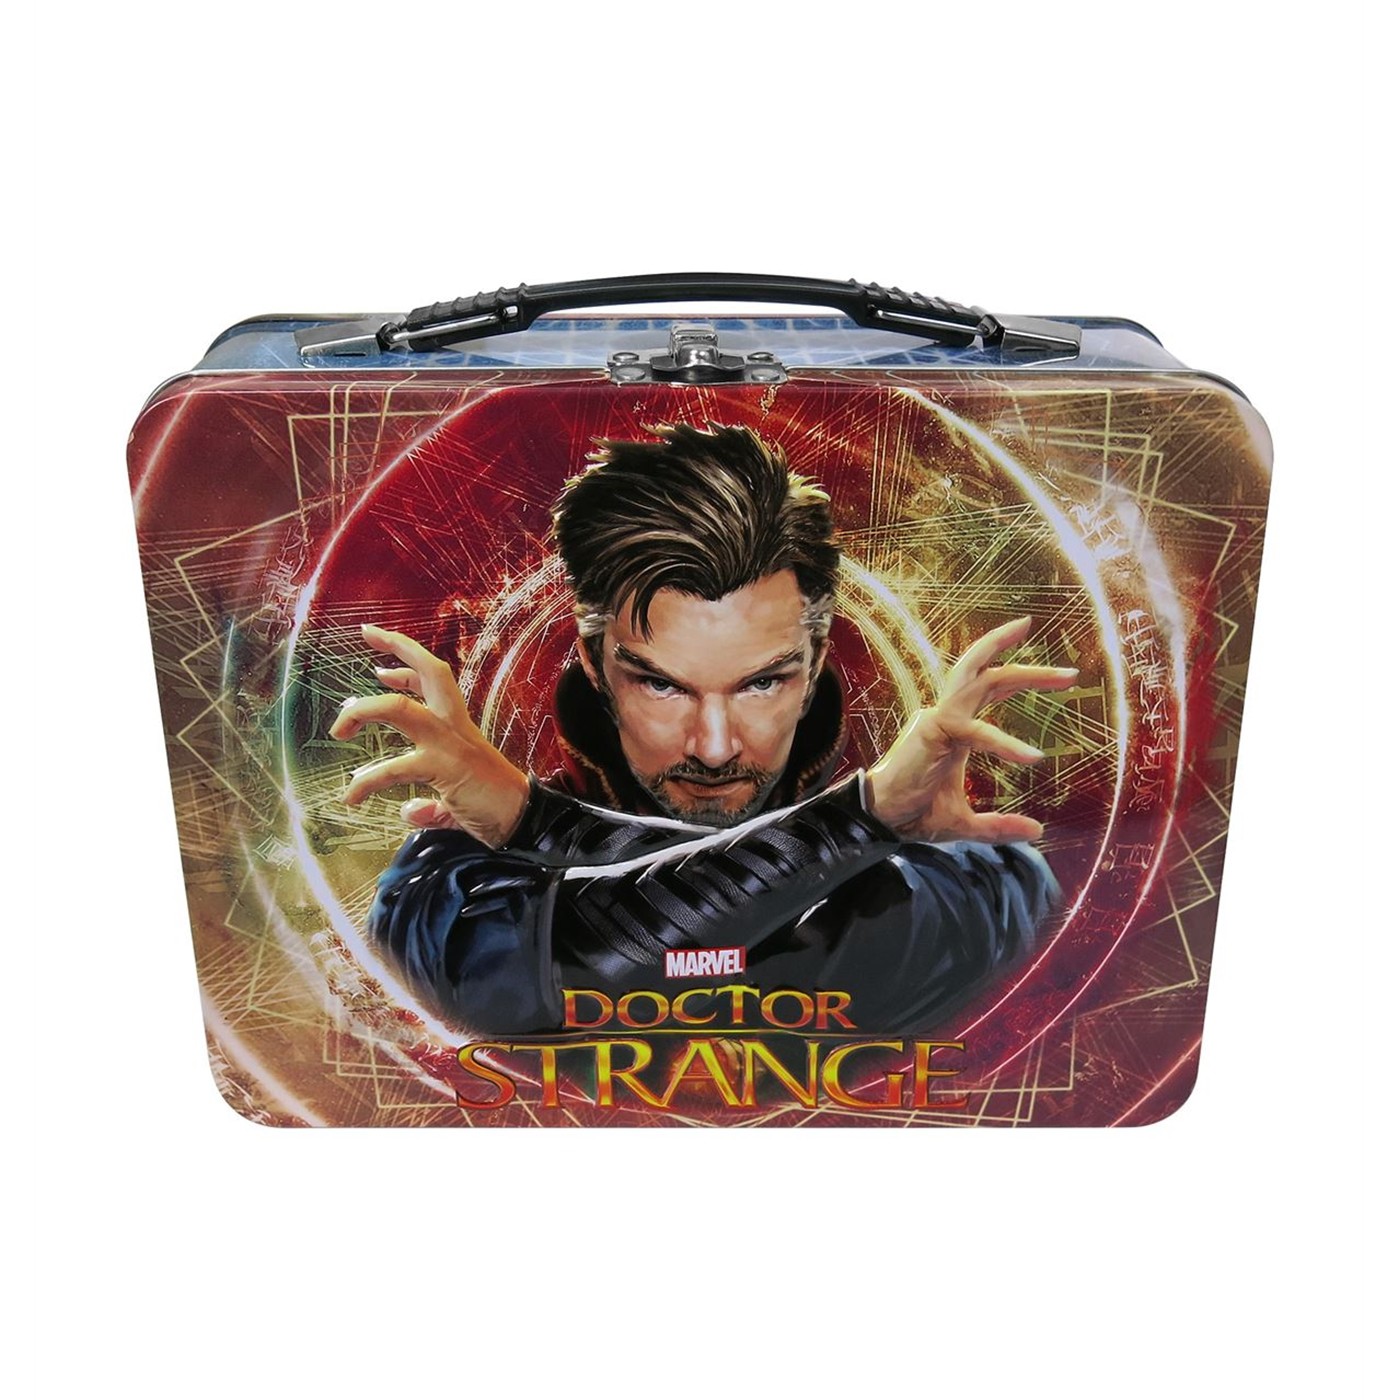 Dr. Strange Tin Lunchbox